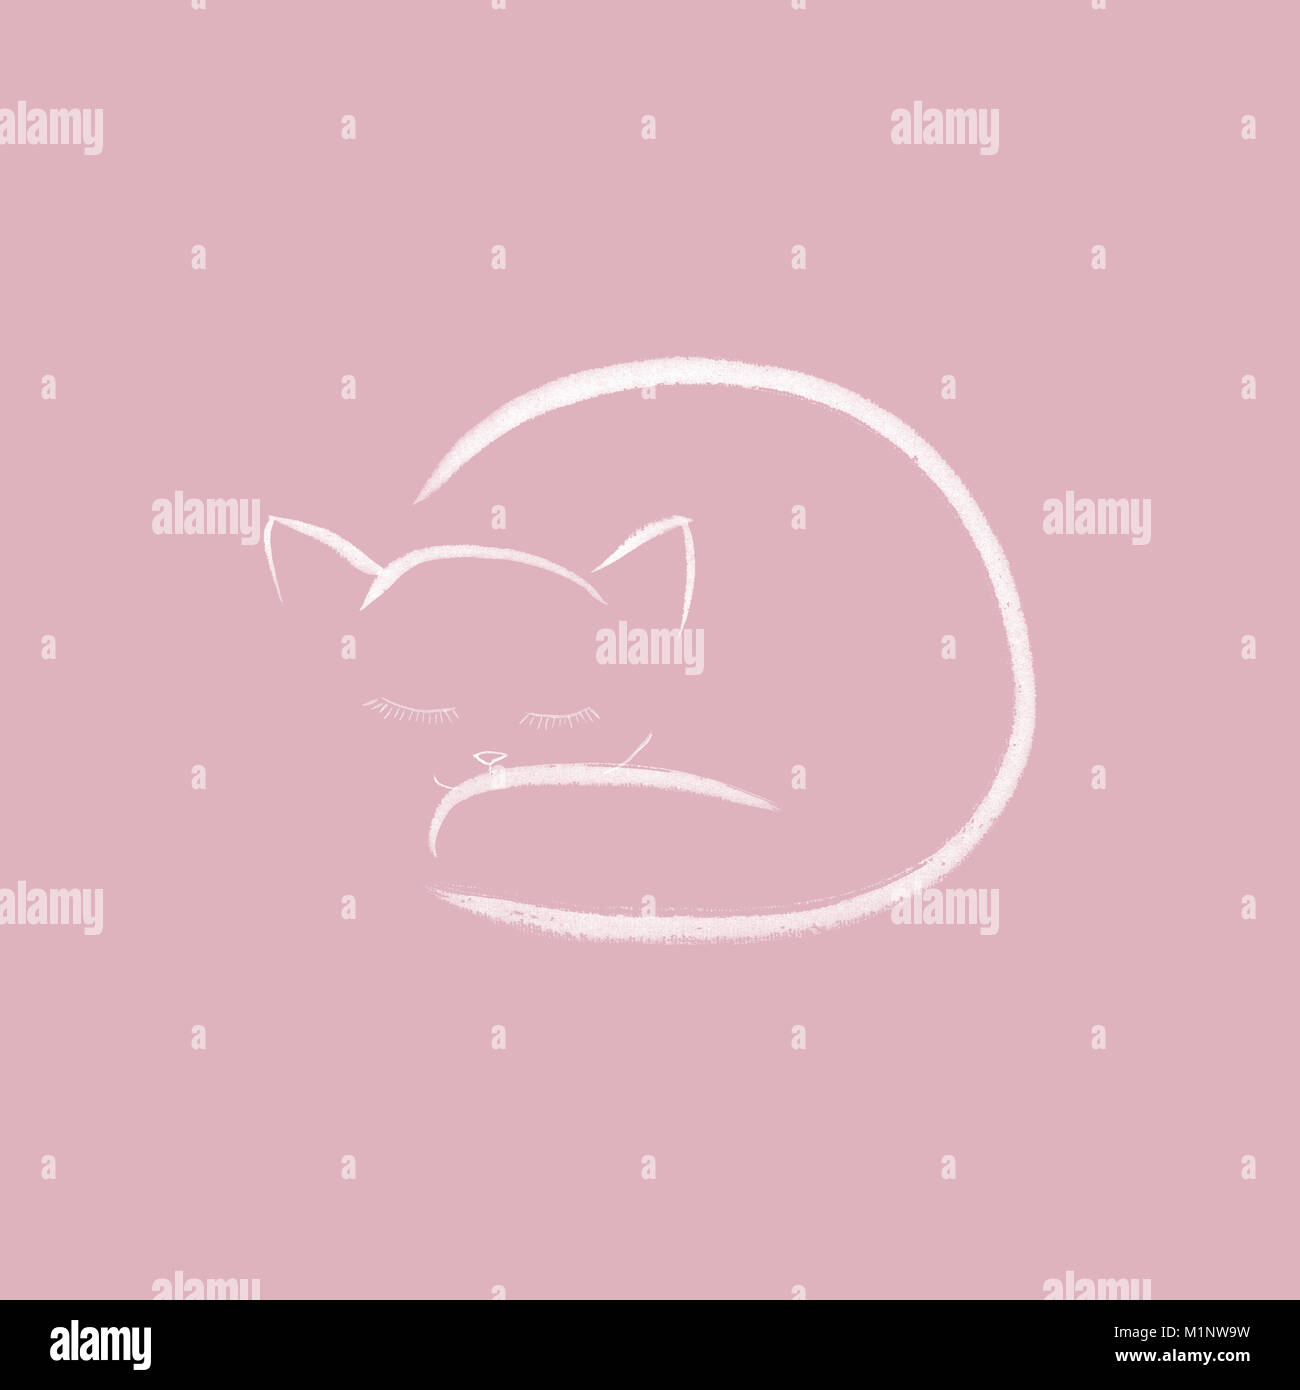 Lindo color rosa acurrucado durmiendo cat dibujo artístico, diseño minimalista, gatito blanco sobre fondo de color rosa polvo desapareció Foto de stock